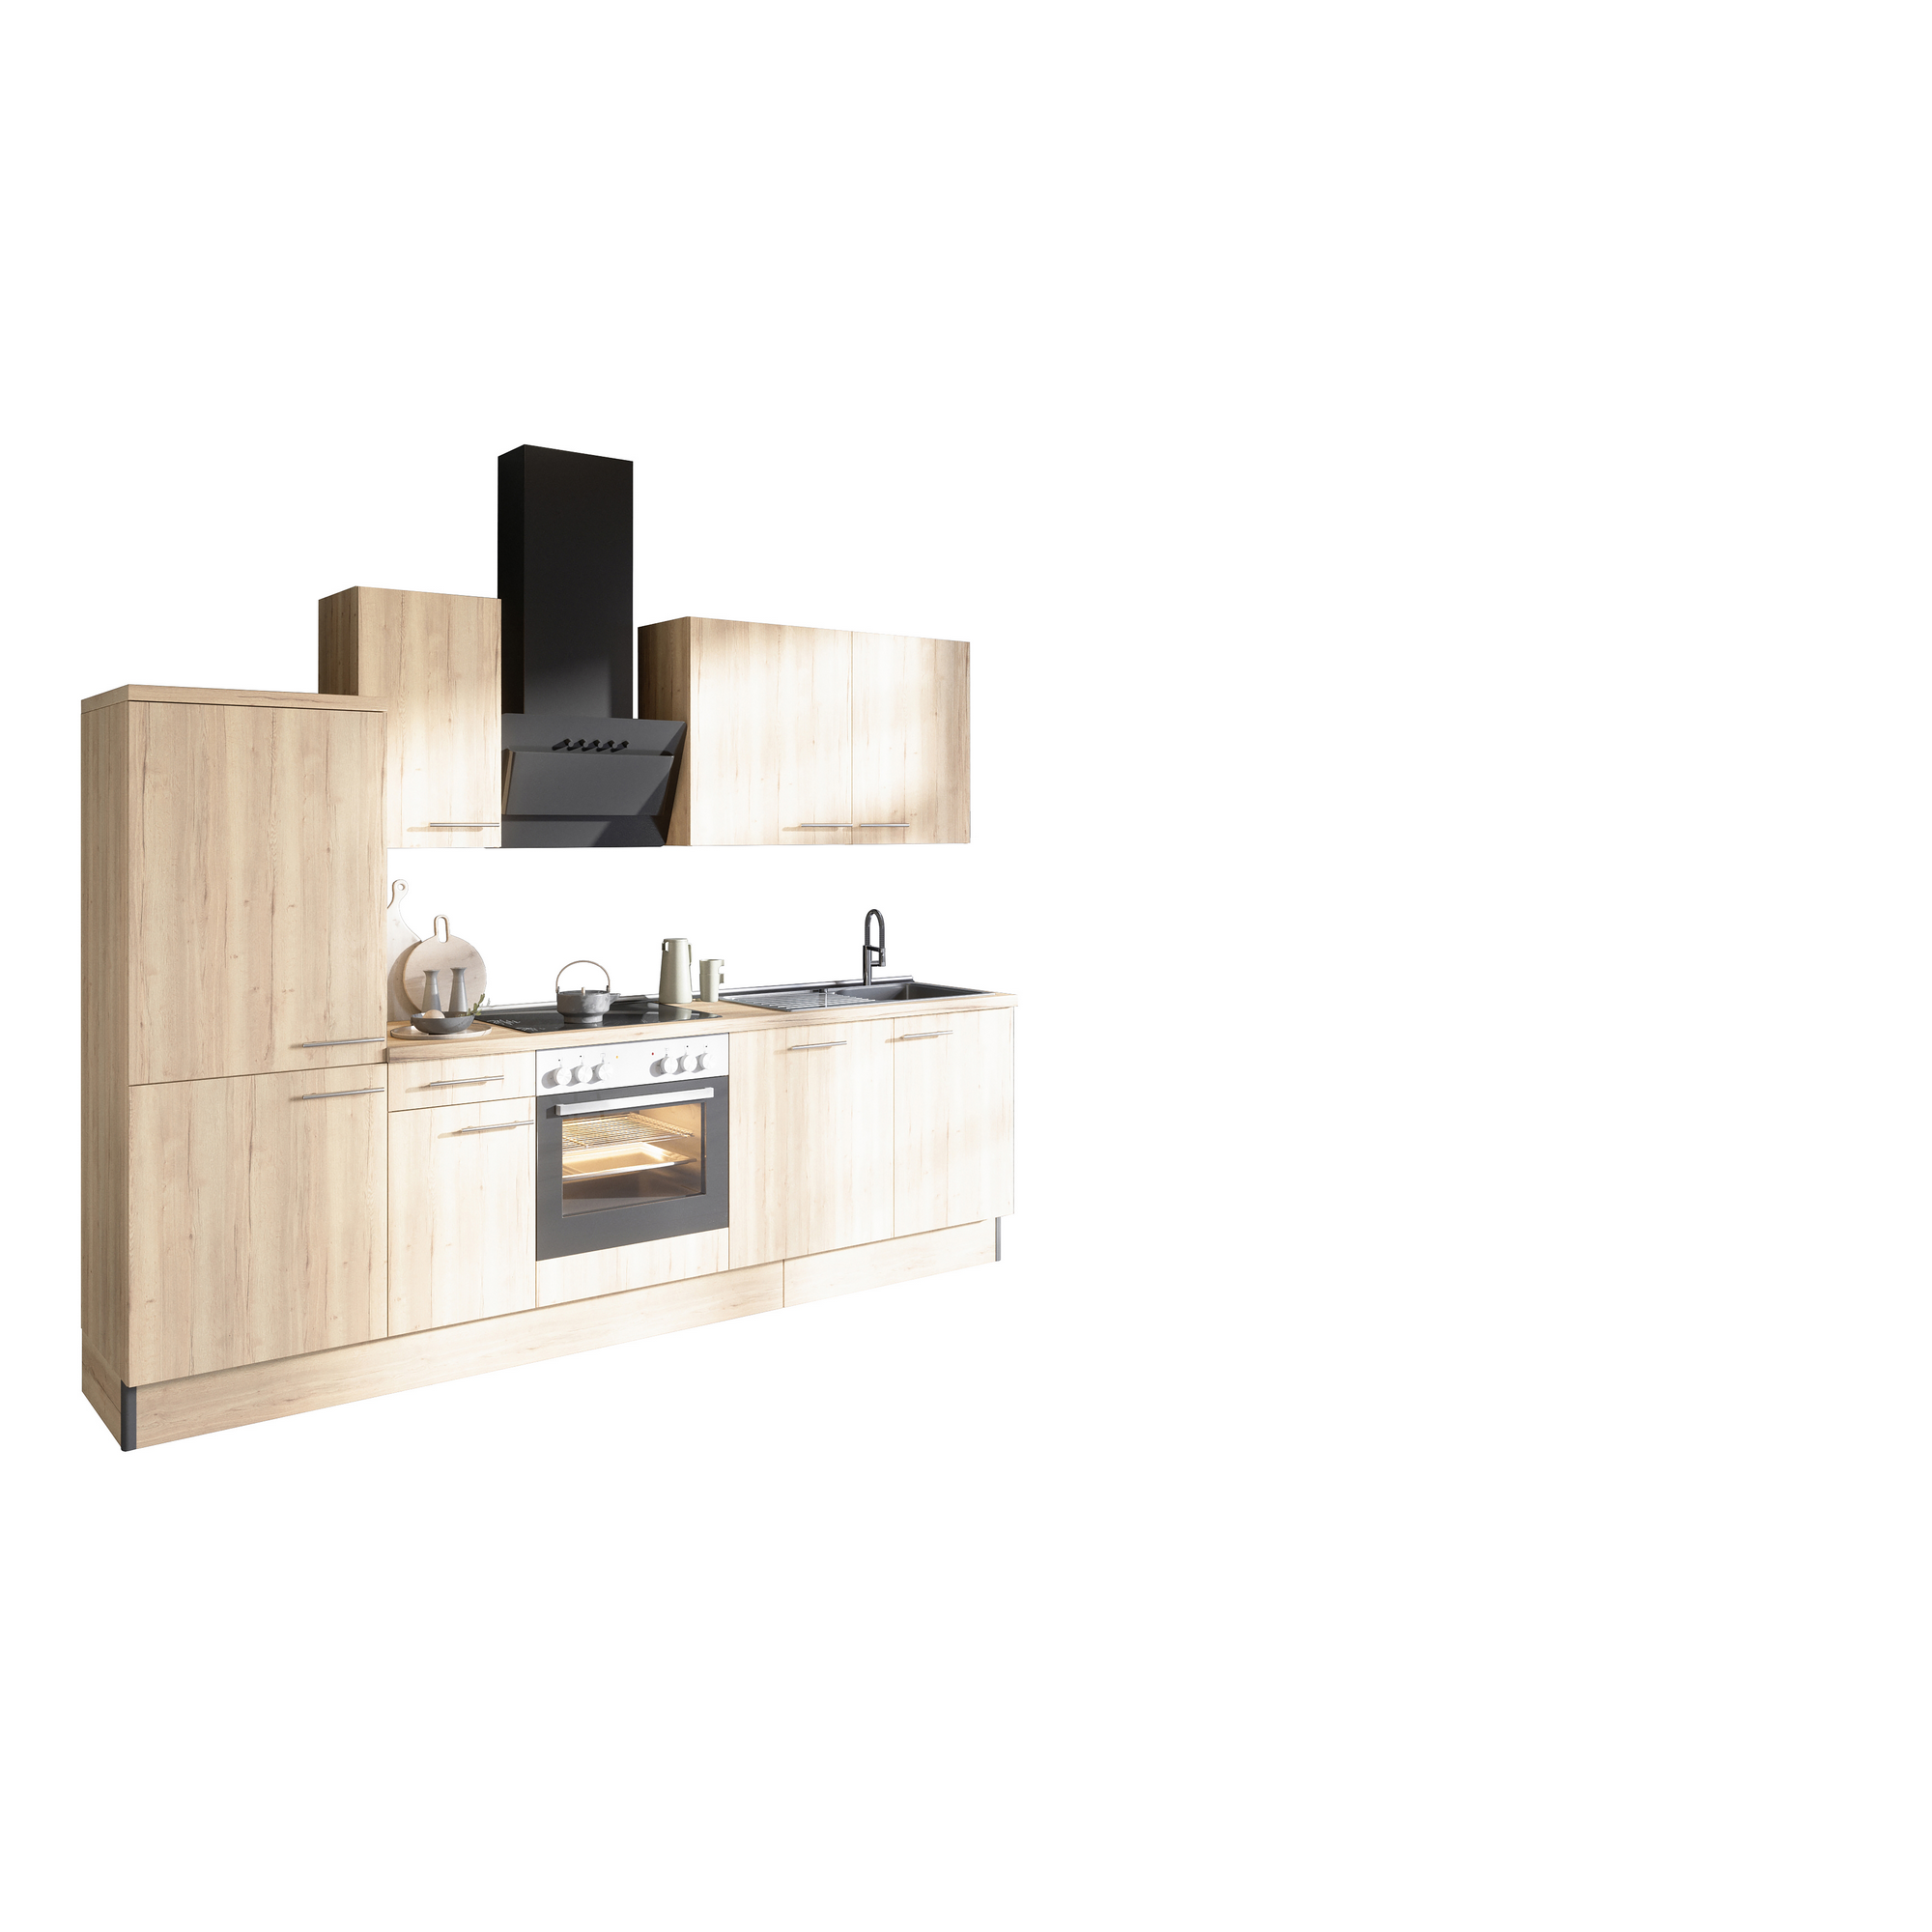 Küchenzeile mit E-Geräten 'OPTIkoncept Erik290' eichefarben 270 cm + product picture